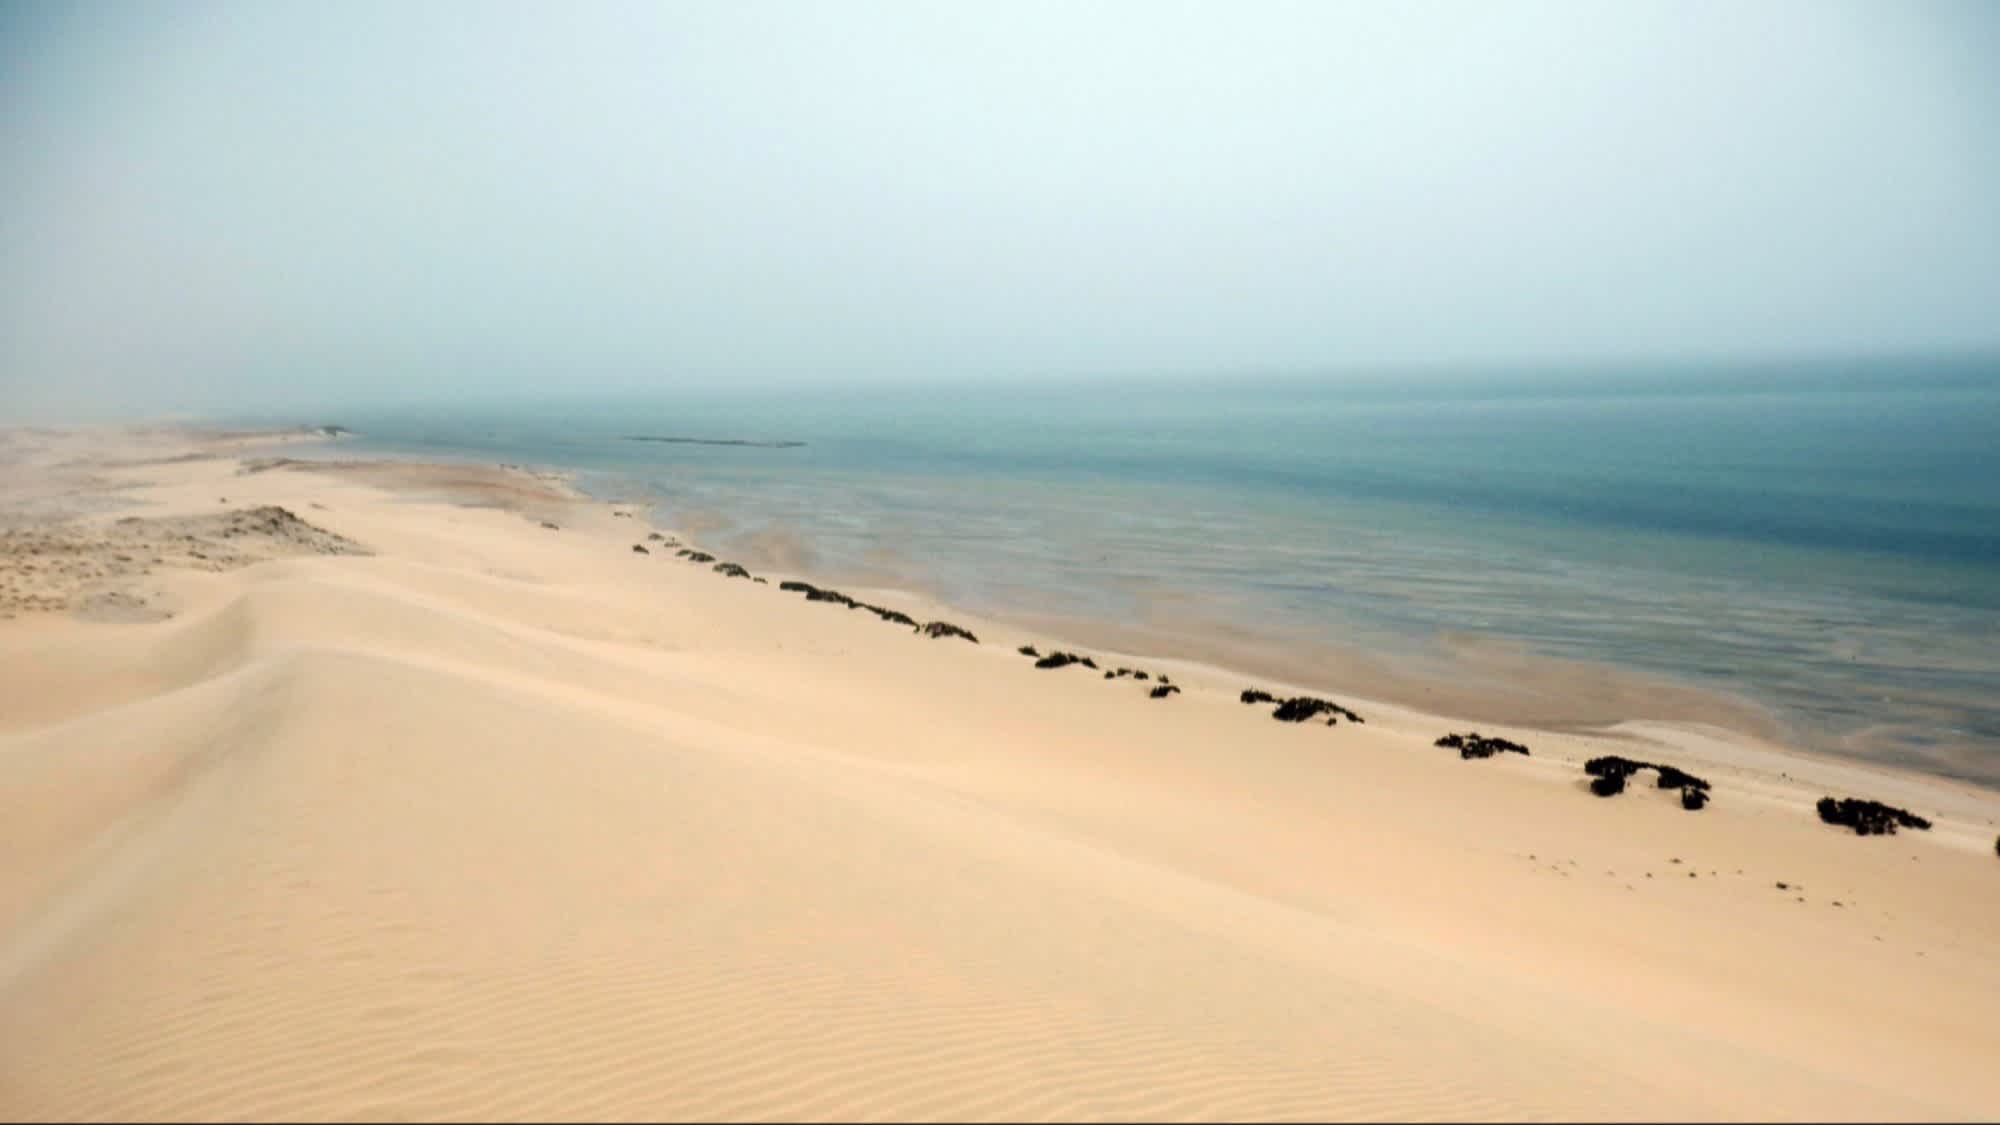 Sanddünen bei Dakhla in der Westsahara, Morokko mit Blick auf das Meer.

